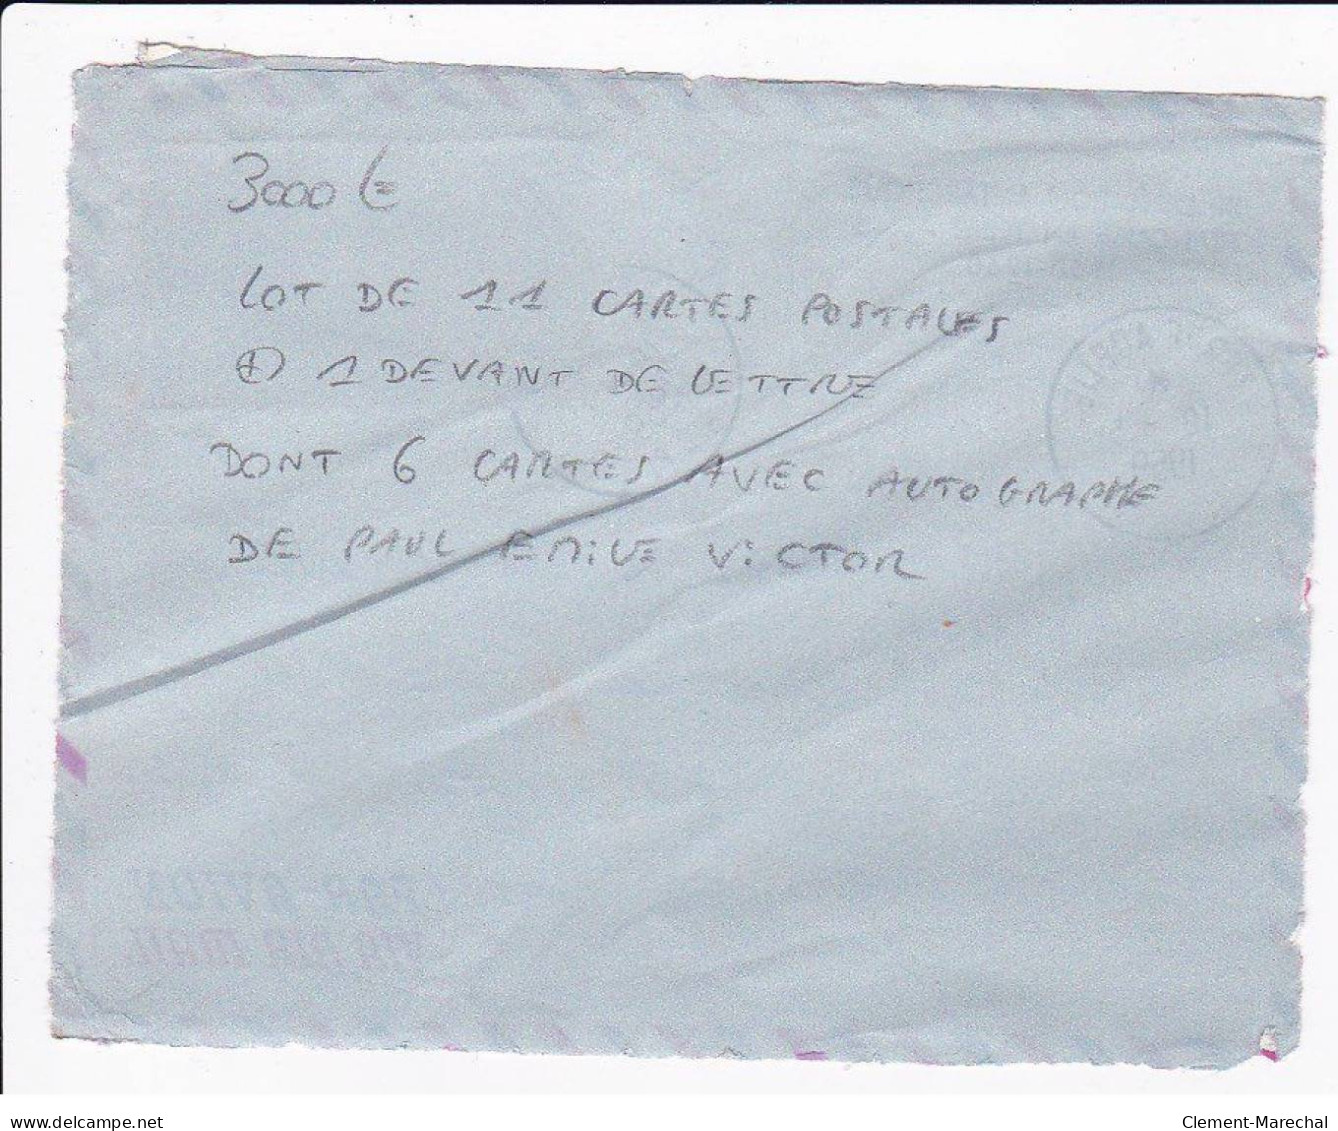 POLAIRE : lot de 11 cartes postales et 1 devant de lettre dont 6 avec l'autographe de Paul Emile Victor - bon état